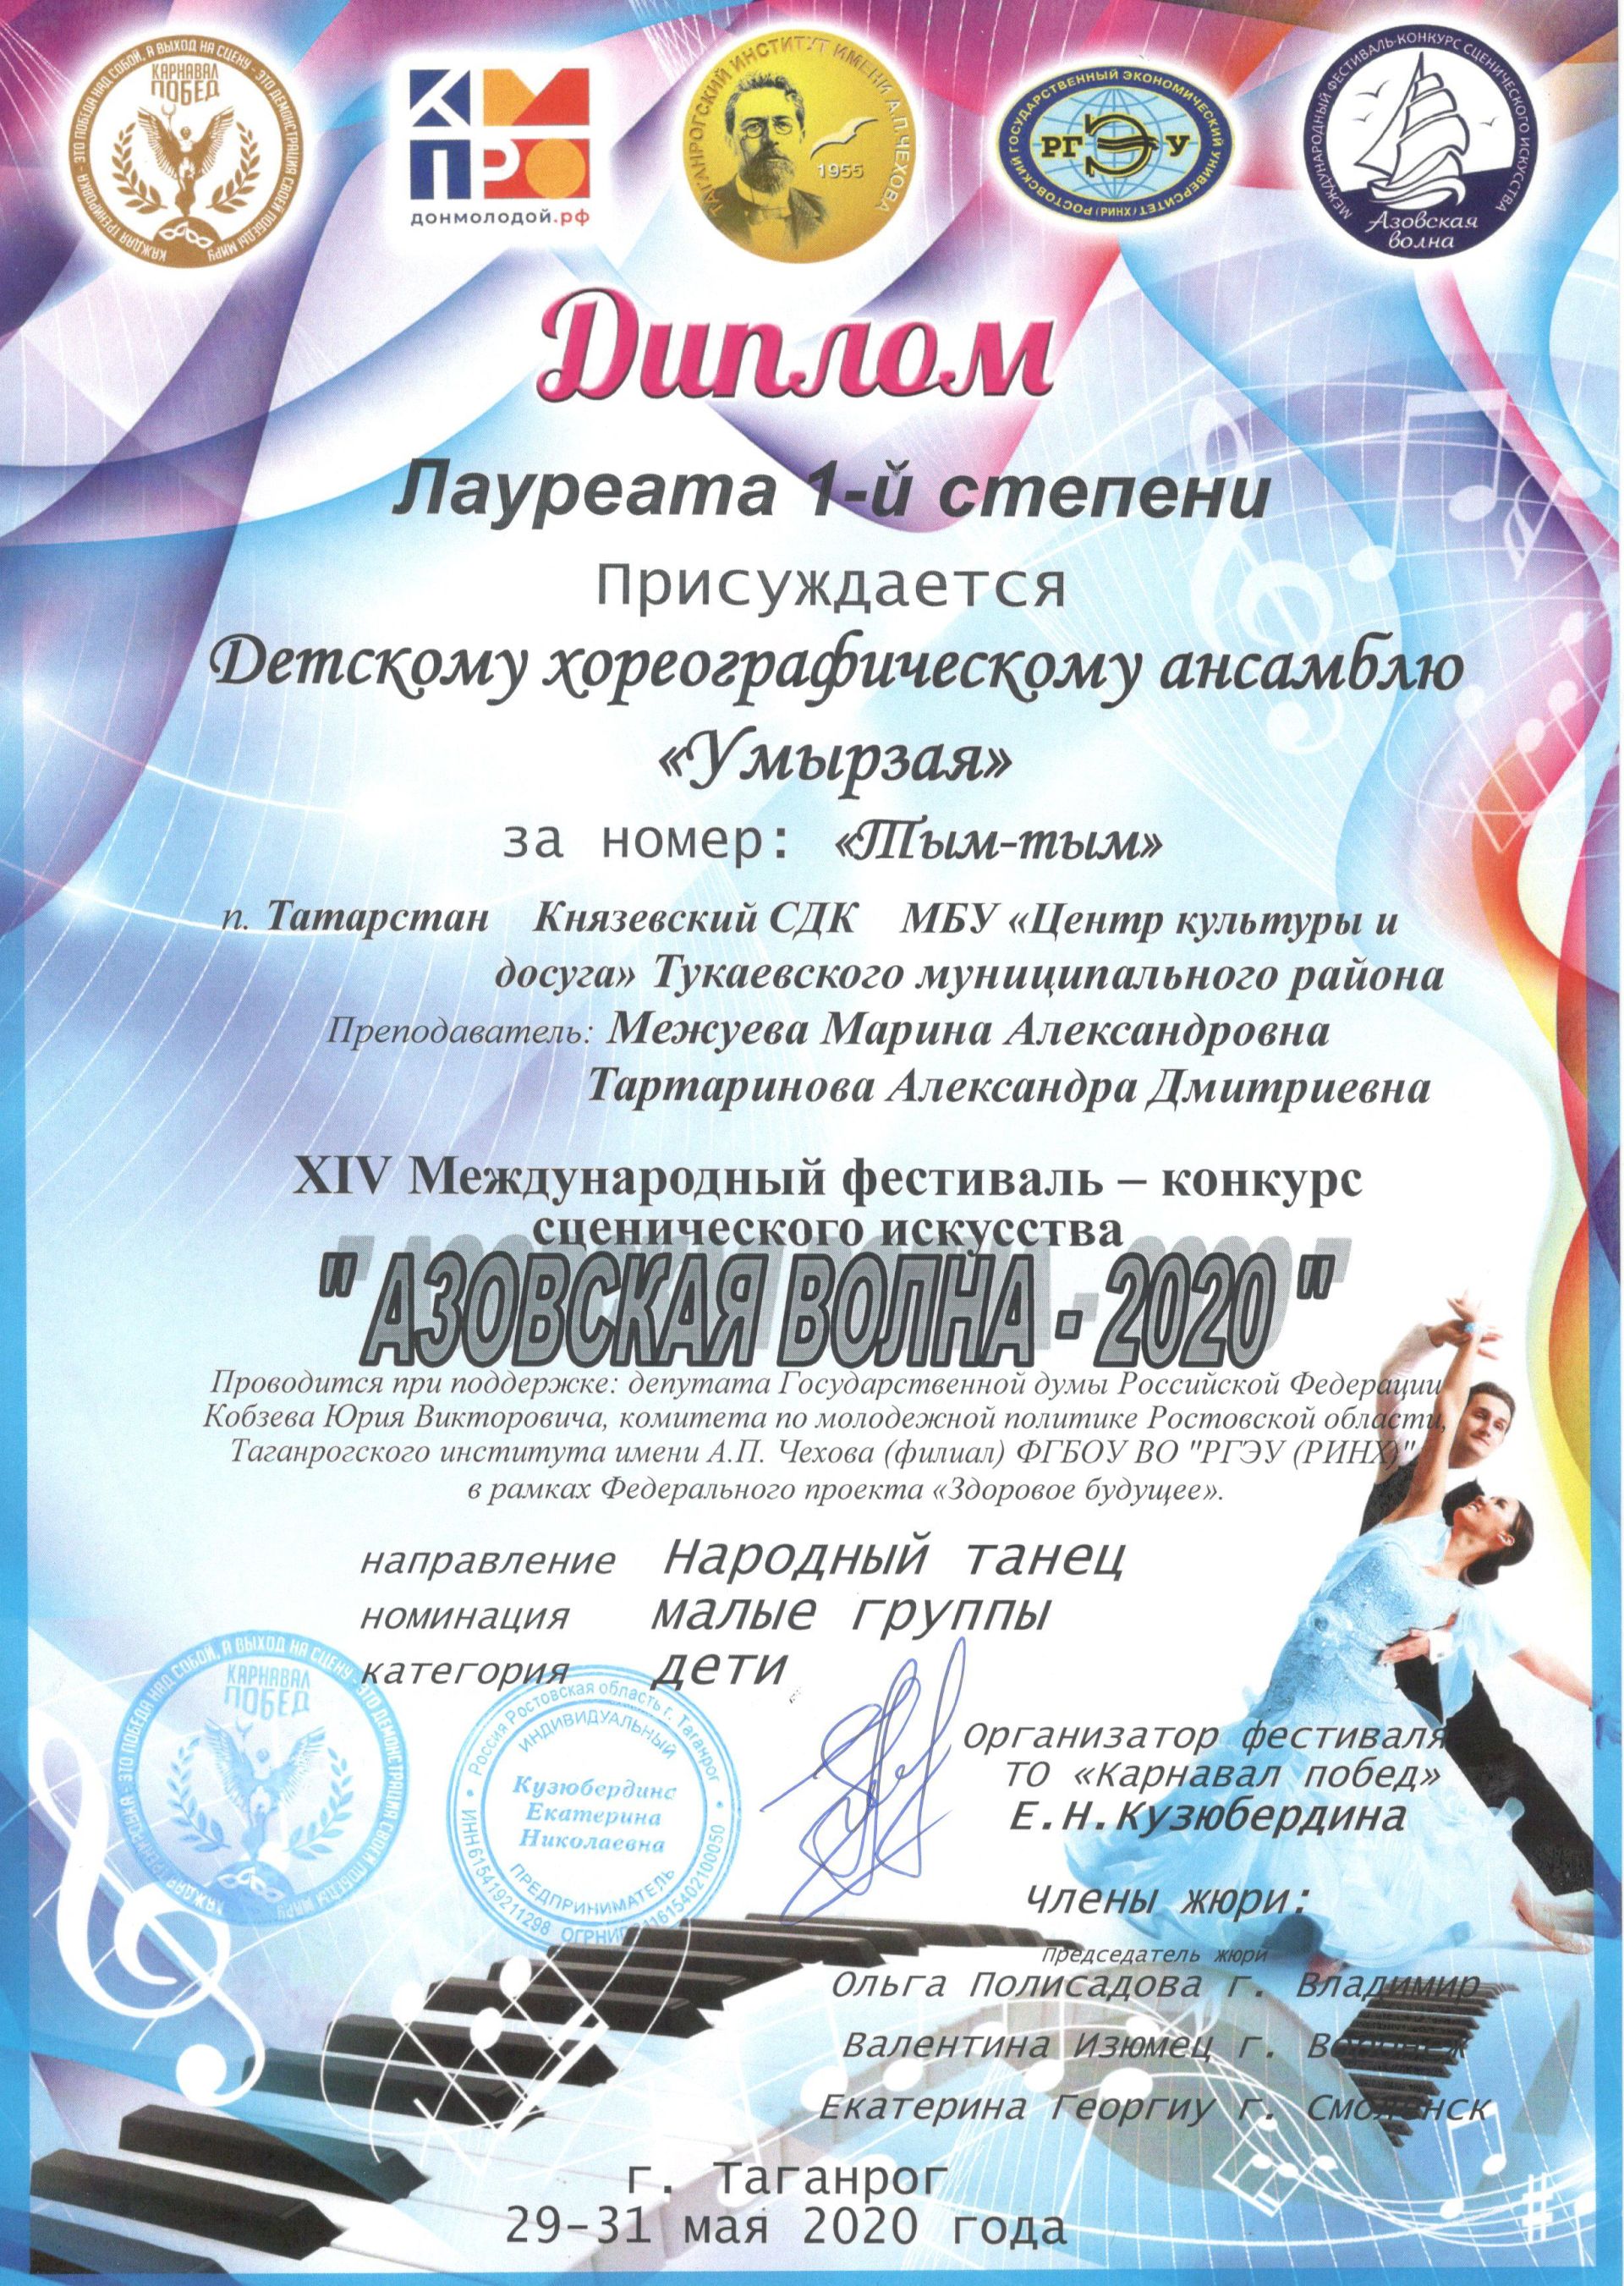 Коллектив “Умырзая” принял участие в XIV Международном  фестивале – конкурсе сценического искусства